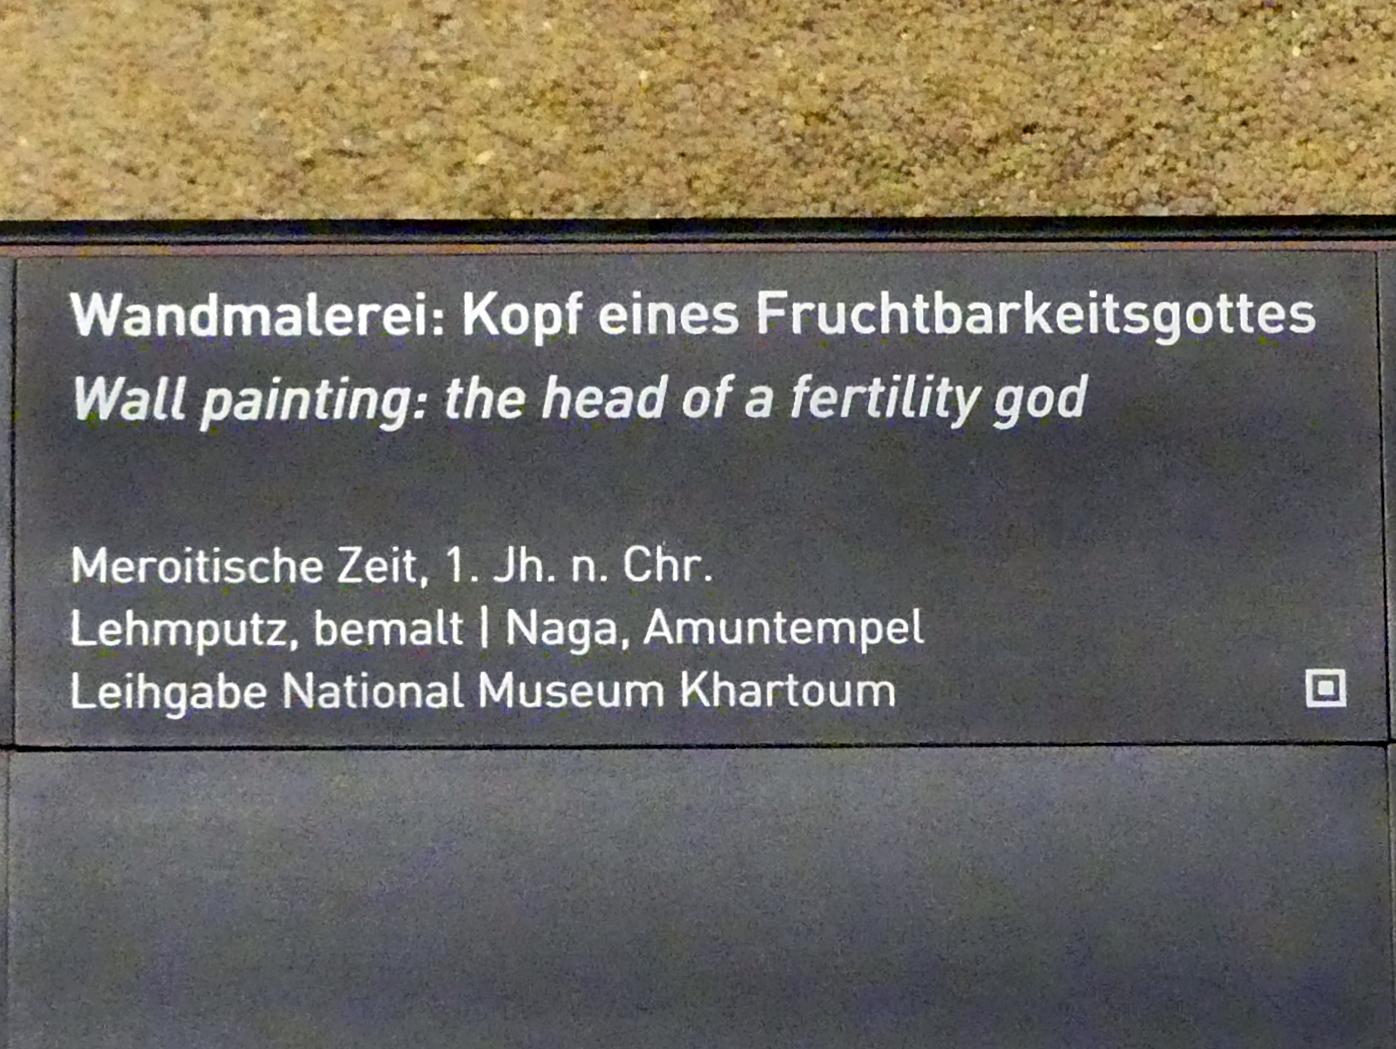 Wandmalerei: Kopf eines Fruchtbarkeitsgottes, Meroitische Zeit, 200 v. Chr. - 500 n. Chr., 1 - 100, Bild 2/2